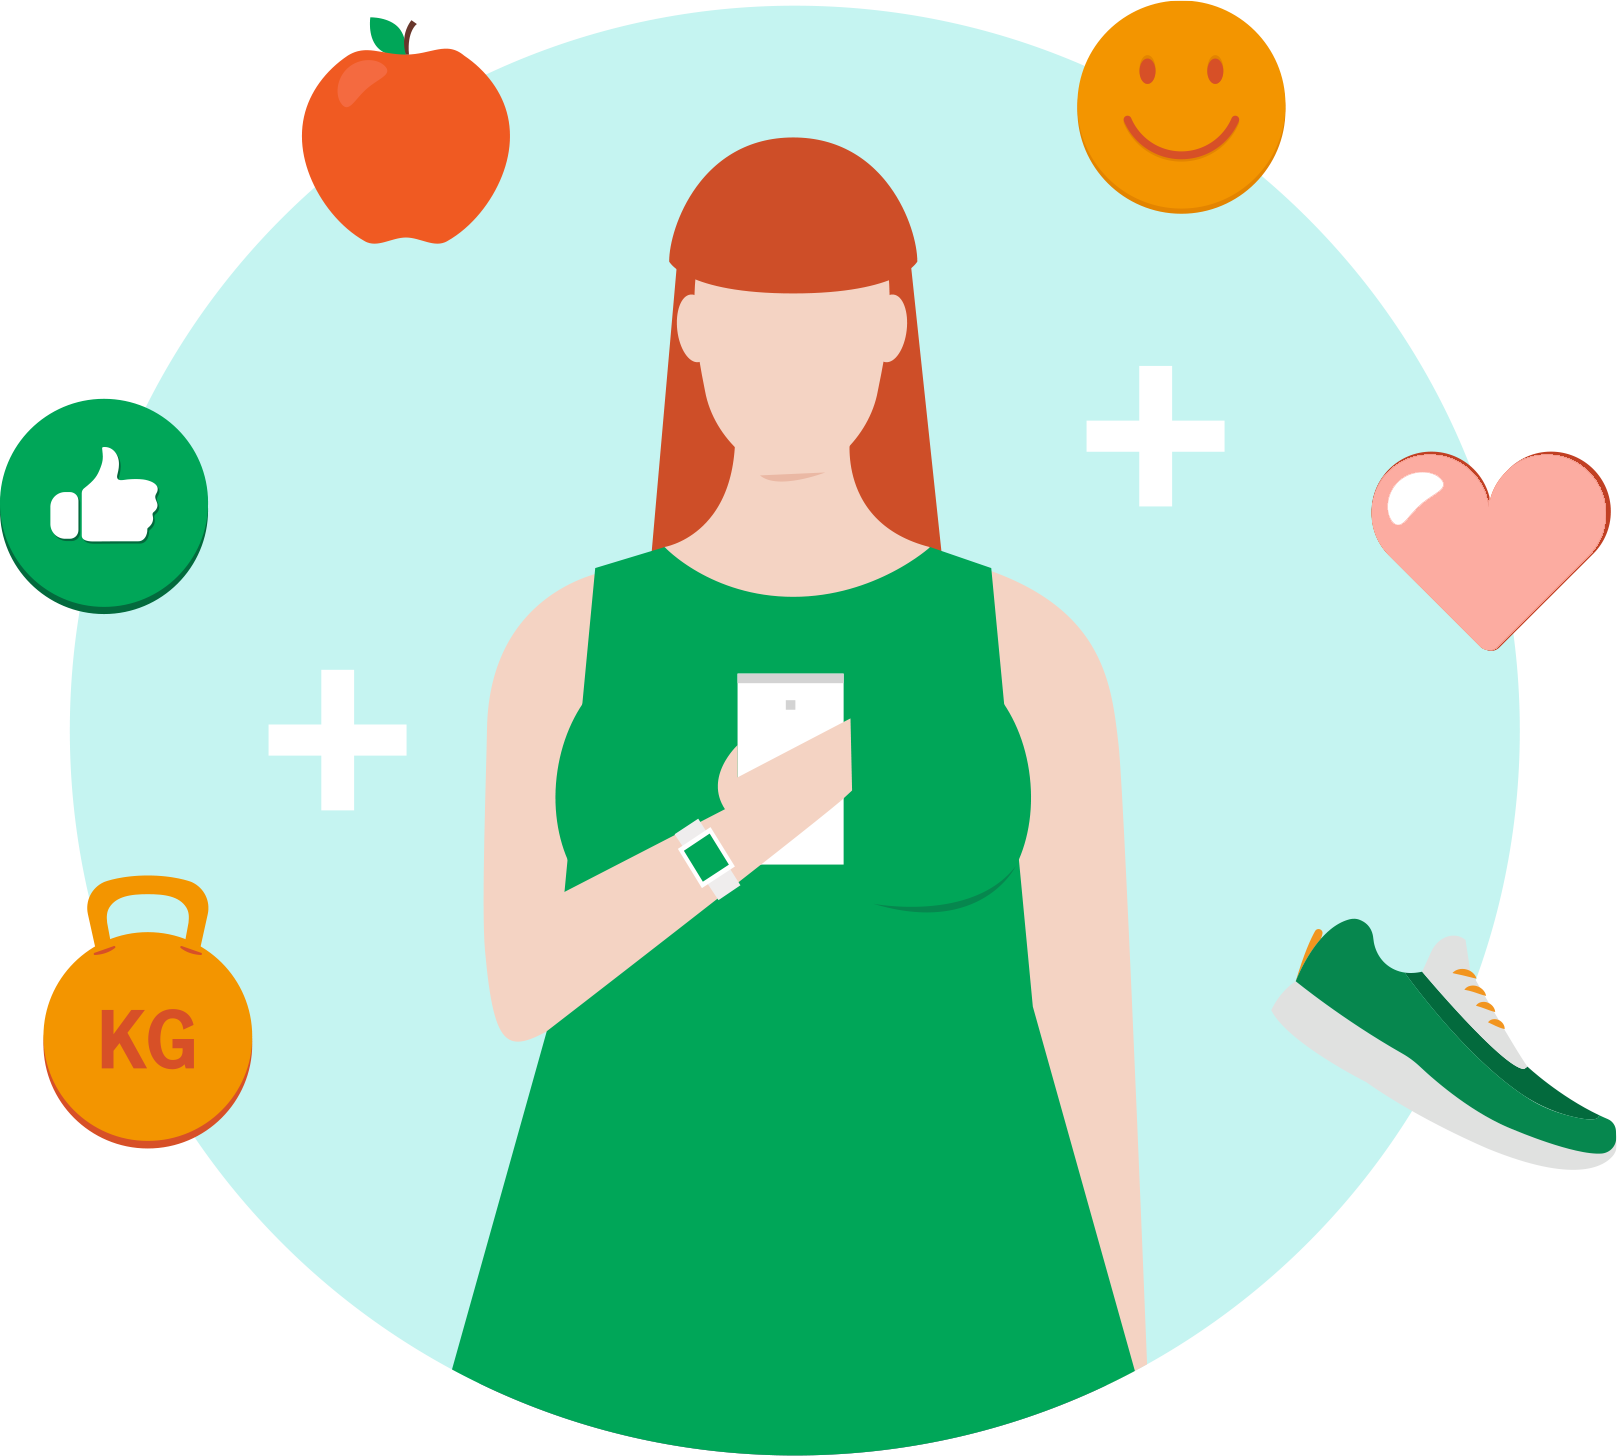 Image d’une personne tenant un cellulaire et entourée d’icônes représentant un poids, un pouce levé, une pomme, une émoticône, un cœur et des chaussures de sport.